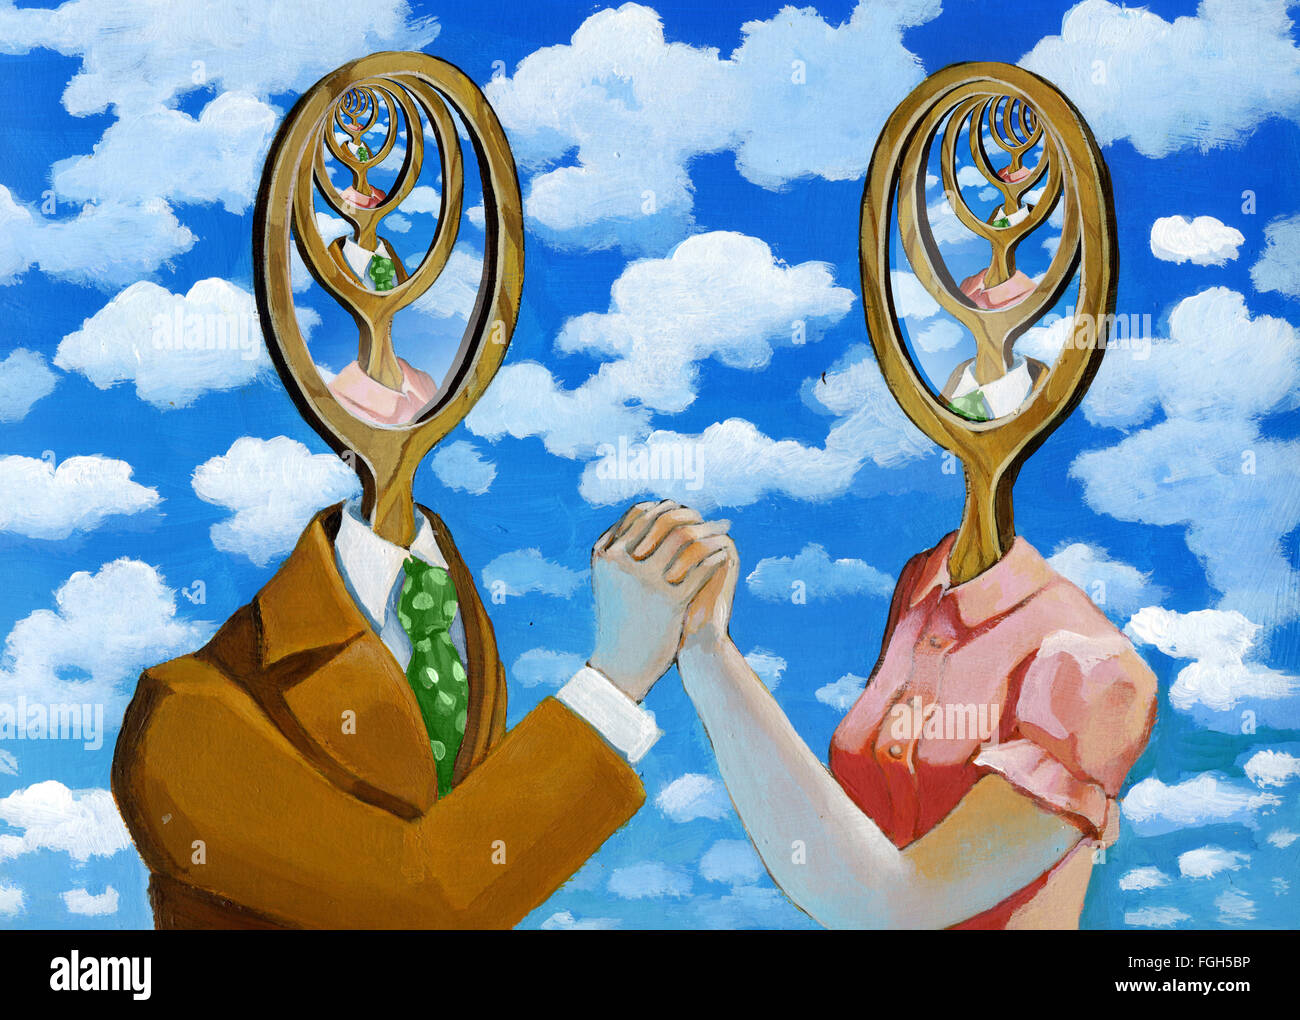 ein Mann und eine Frau spiegeln sich in einander und das unendliche zu  schaffen, wie zwei Spiegel gegenüber gestellt Stockfotografie - Alamy